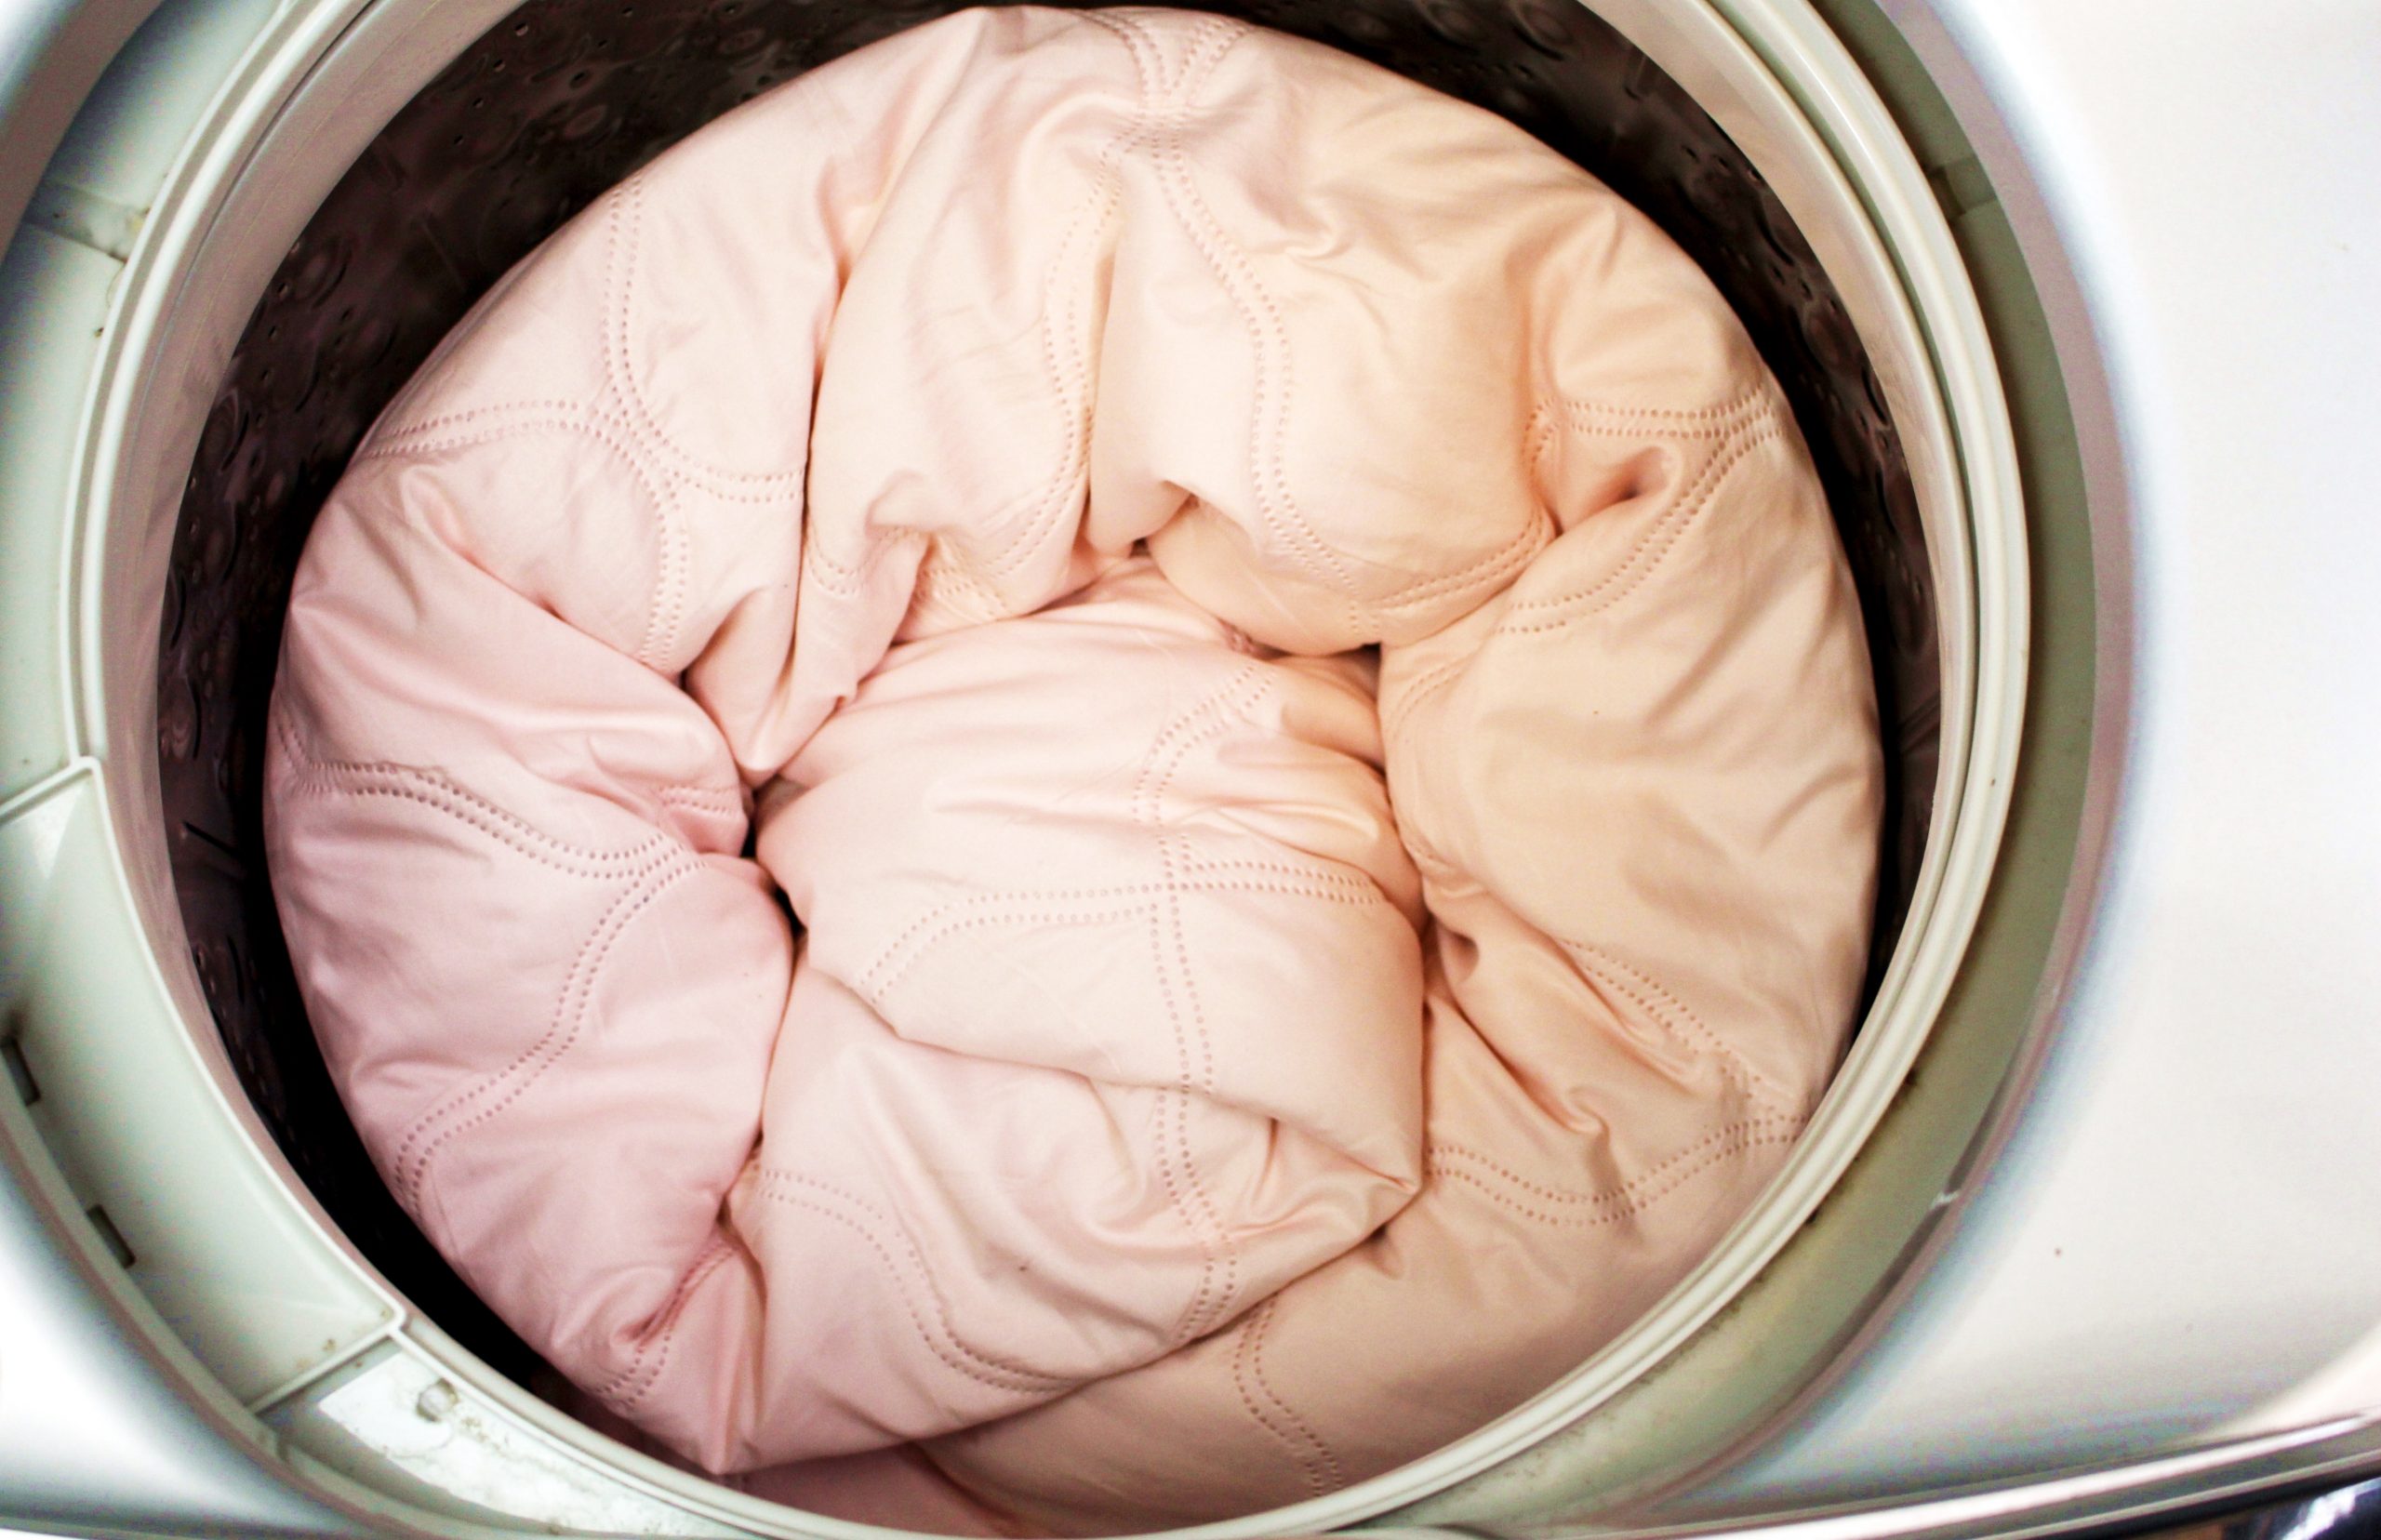 Na imagem é possível ver uma edredom na cor rosa dentro de uma maquina de lavar